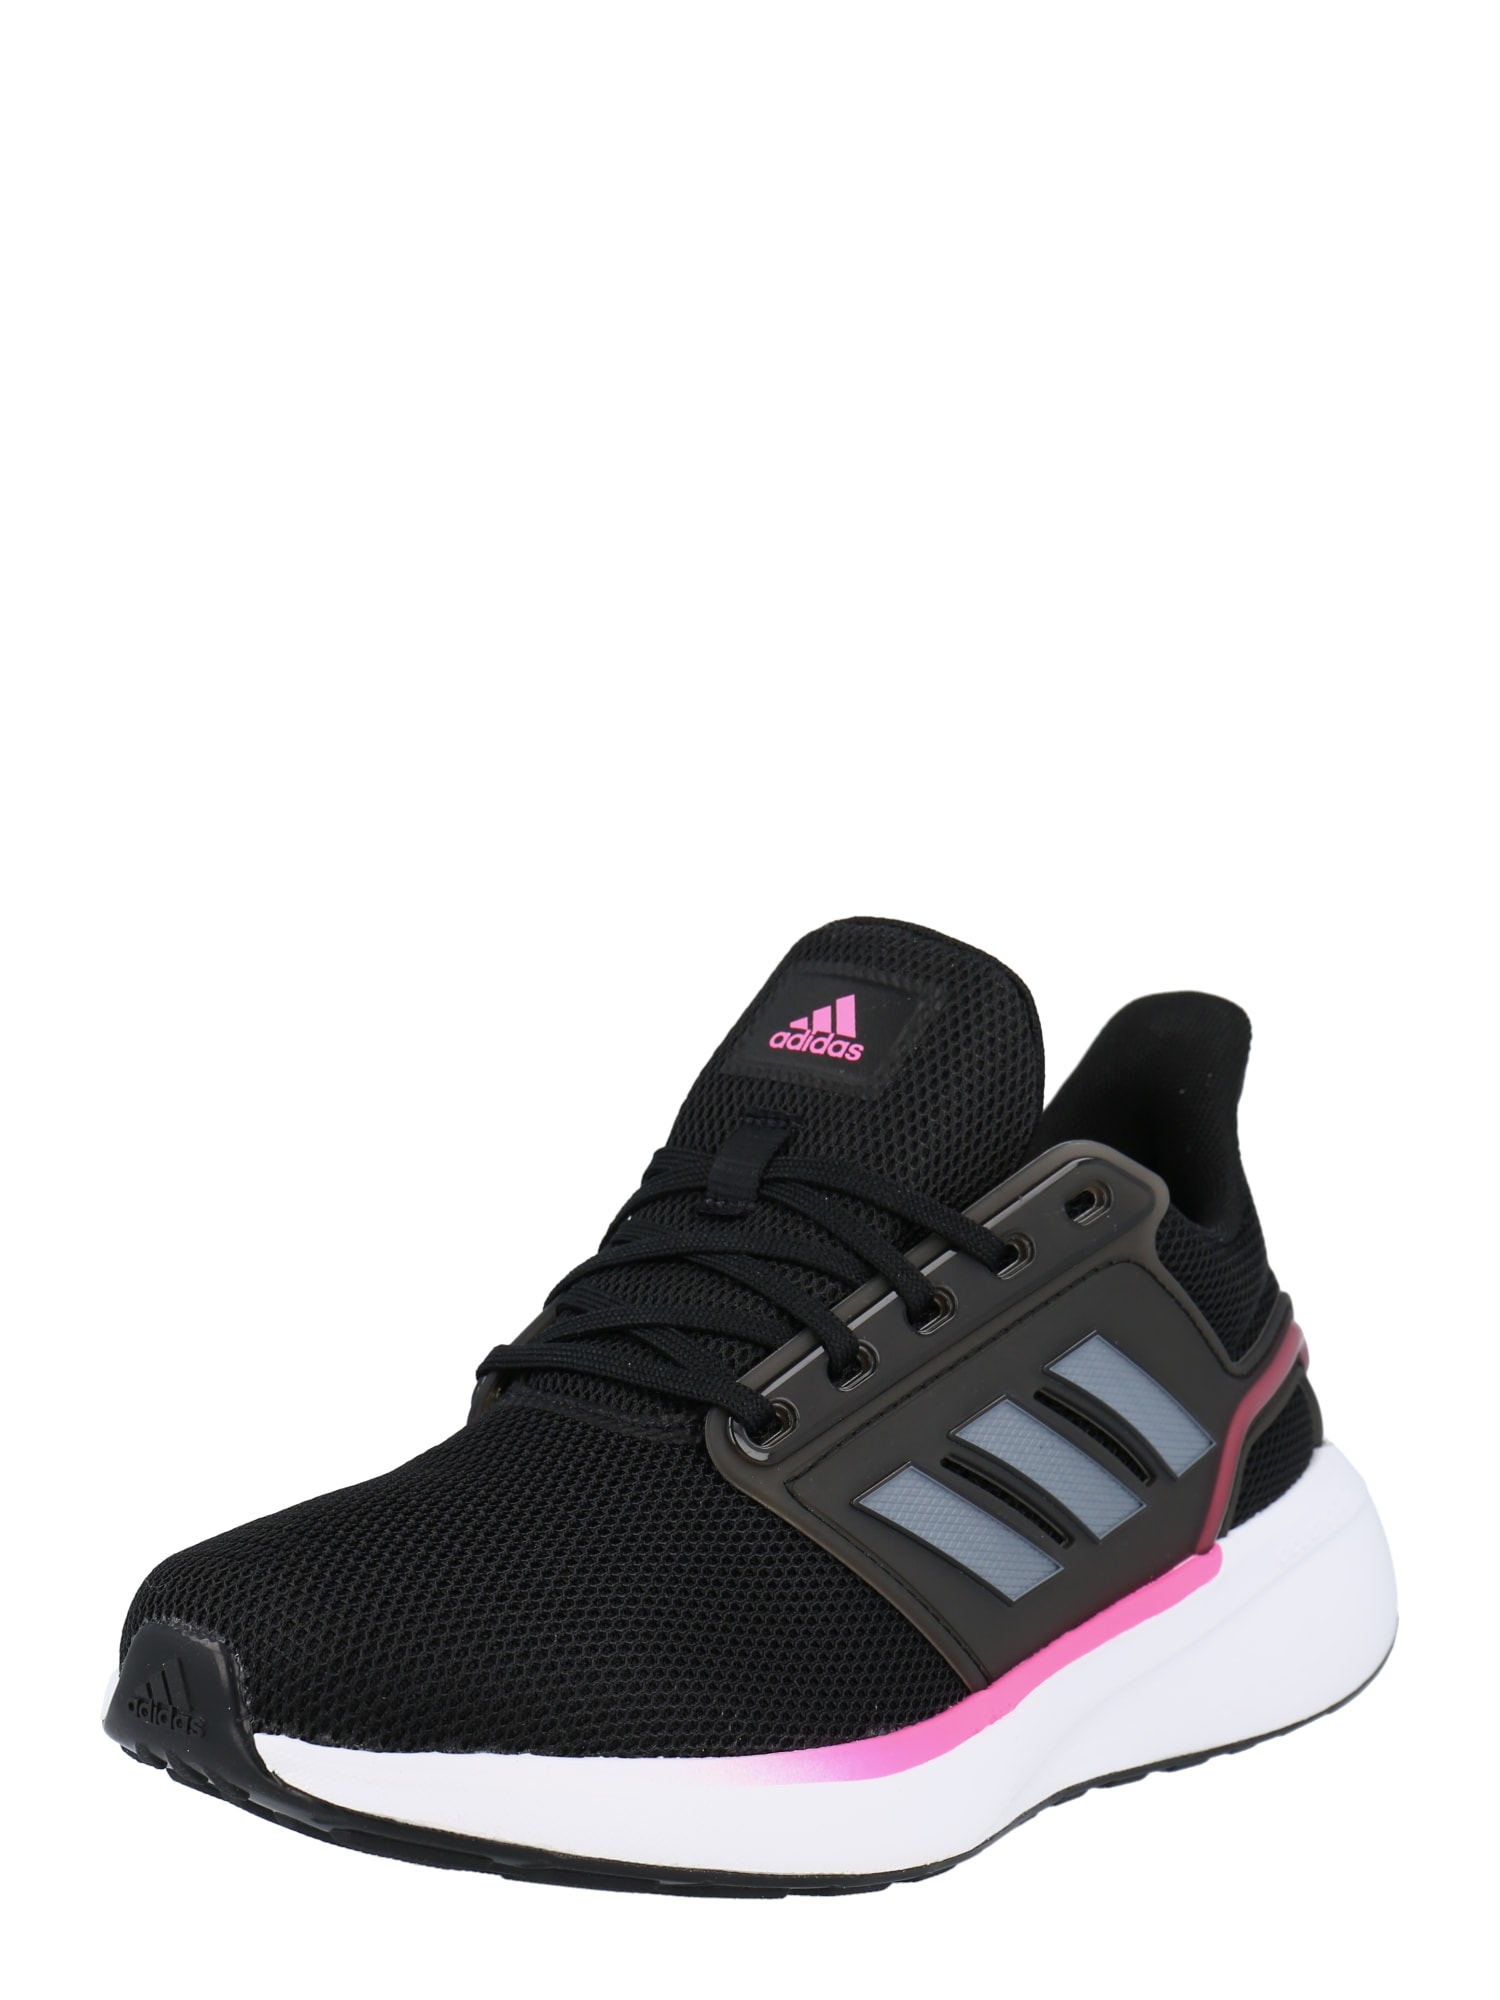 ADIDAS PERFORMANCE Bėgimo batai 'EQ 19' rožinė / juoda / pilka